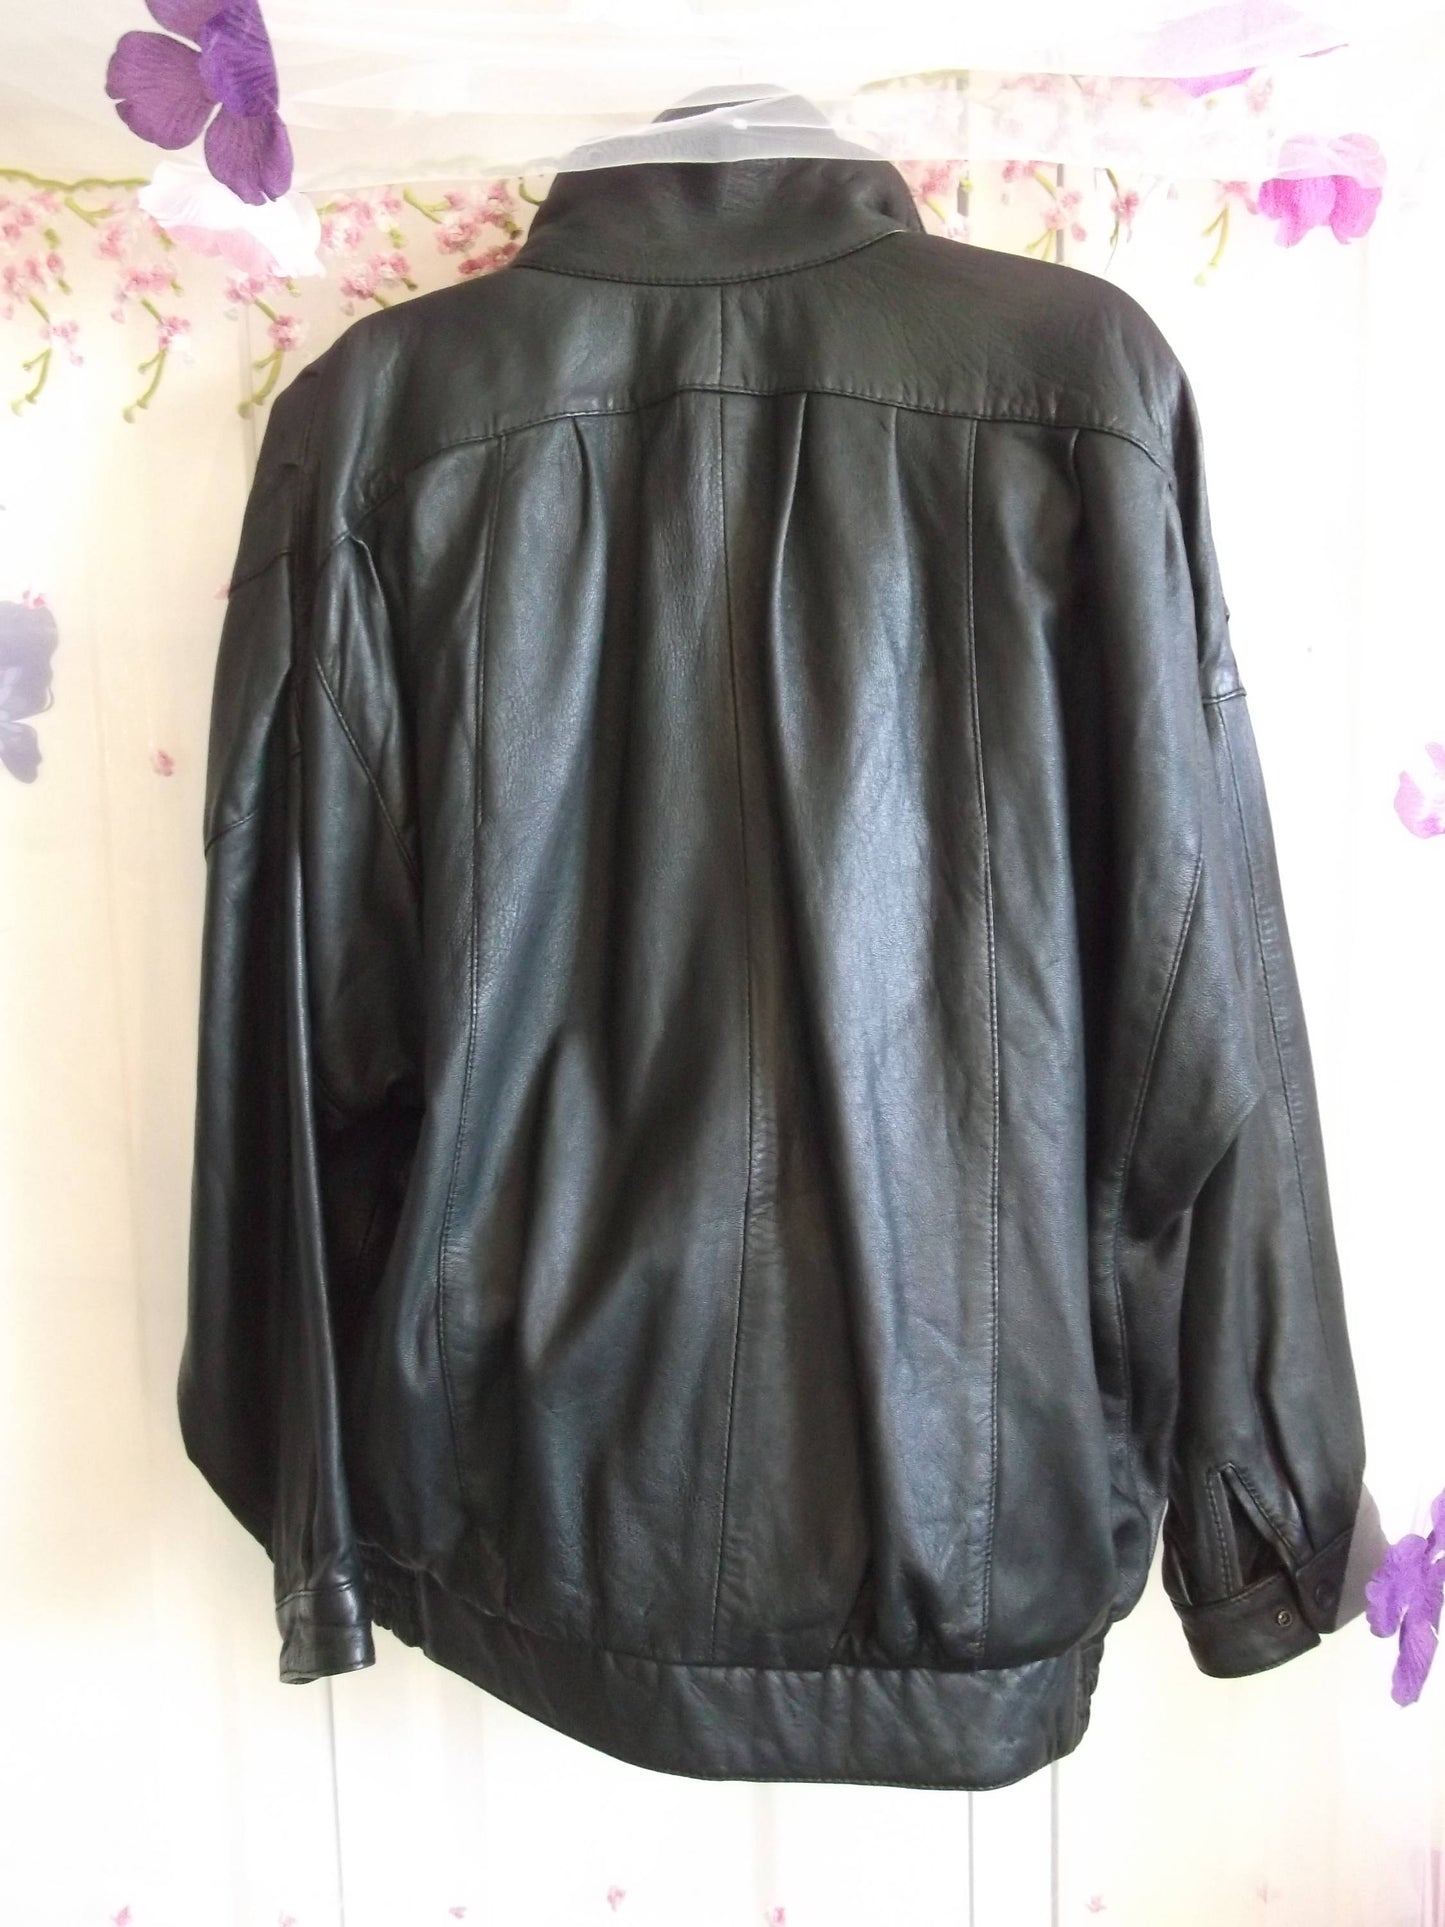 Black leather bomber/batwing sleeve style jacket,elasticated waist,zip front.size XL Wonkey Donkey Bazaar